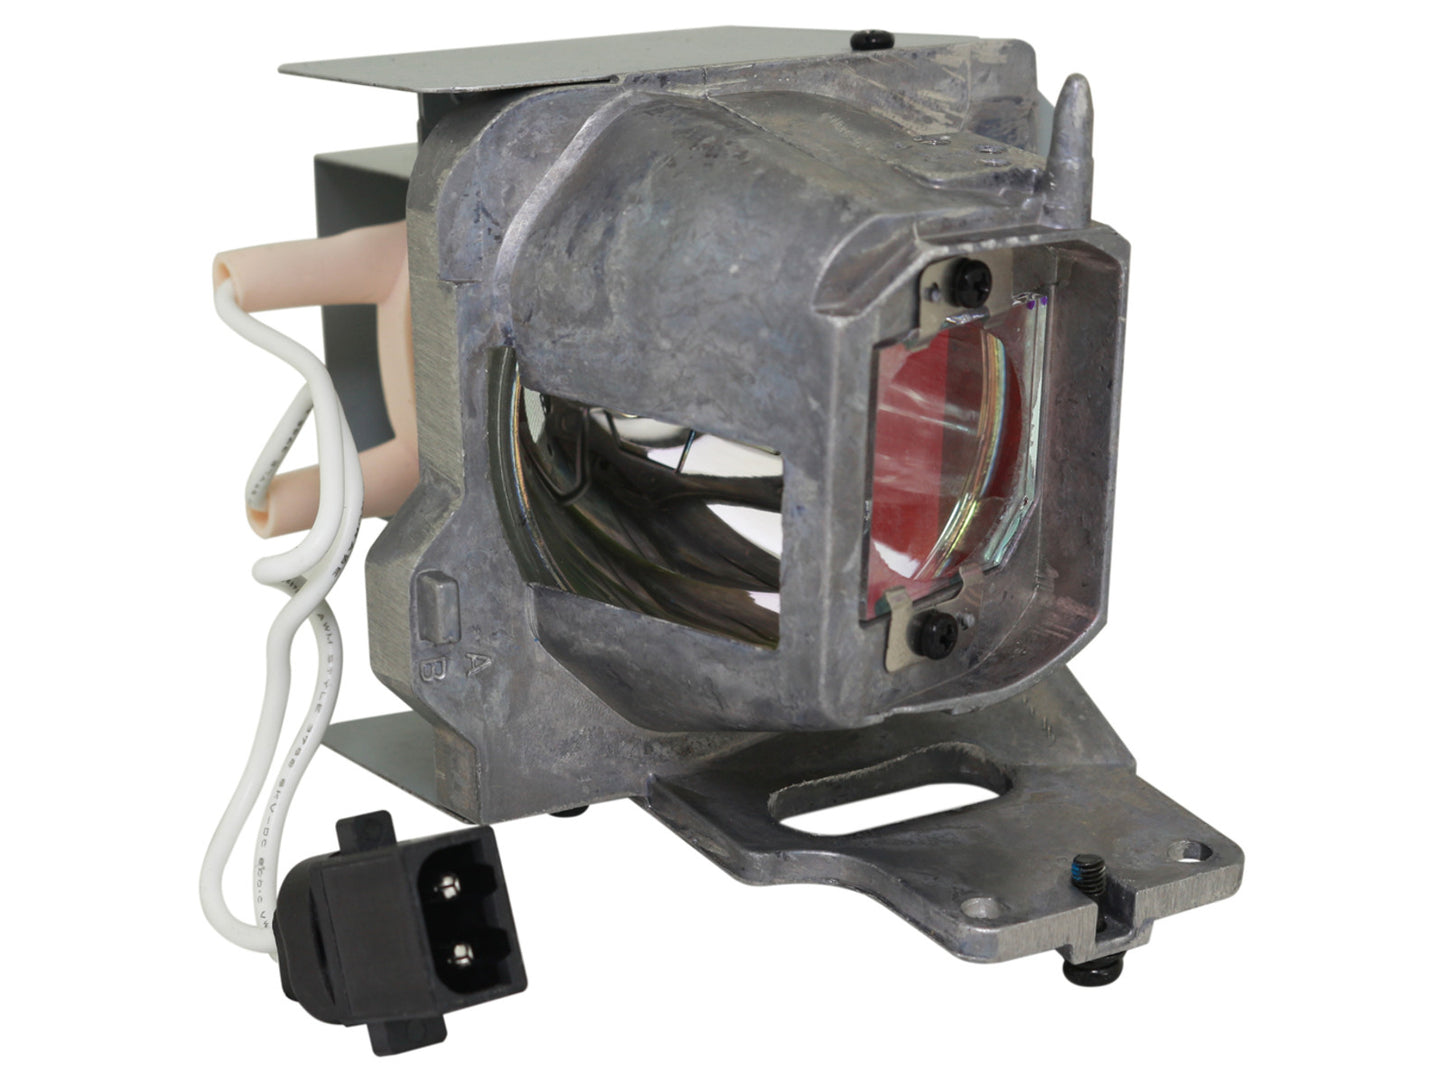 codalux Beamerlampe für ACER UC.JRN11.001 MC.JRN11.002, MC.JRN11.001, PHILIPS Lampe mit Gehäuse - Bild 1